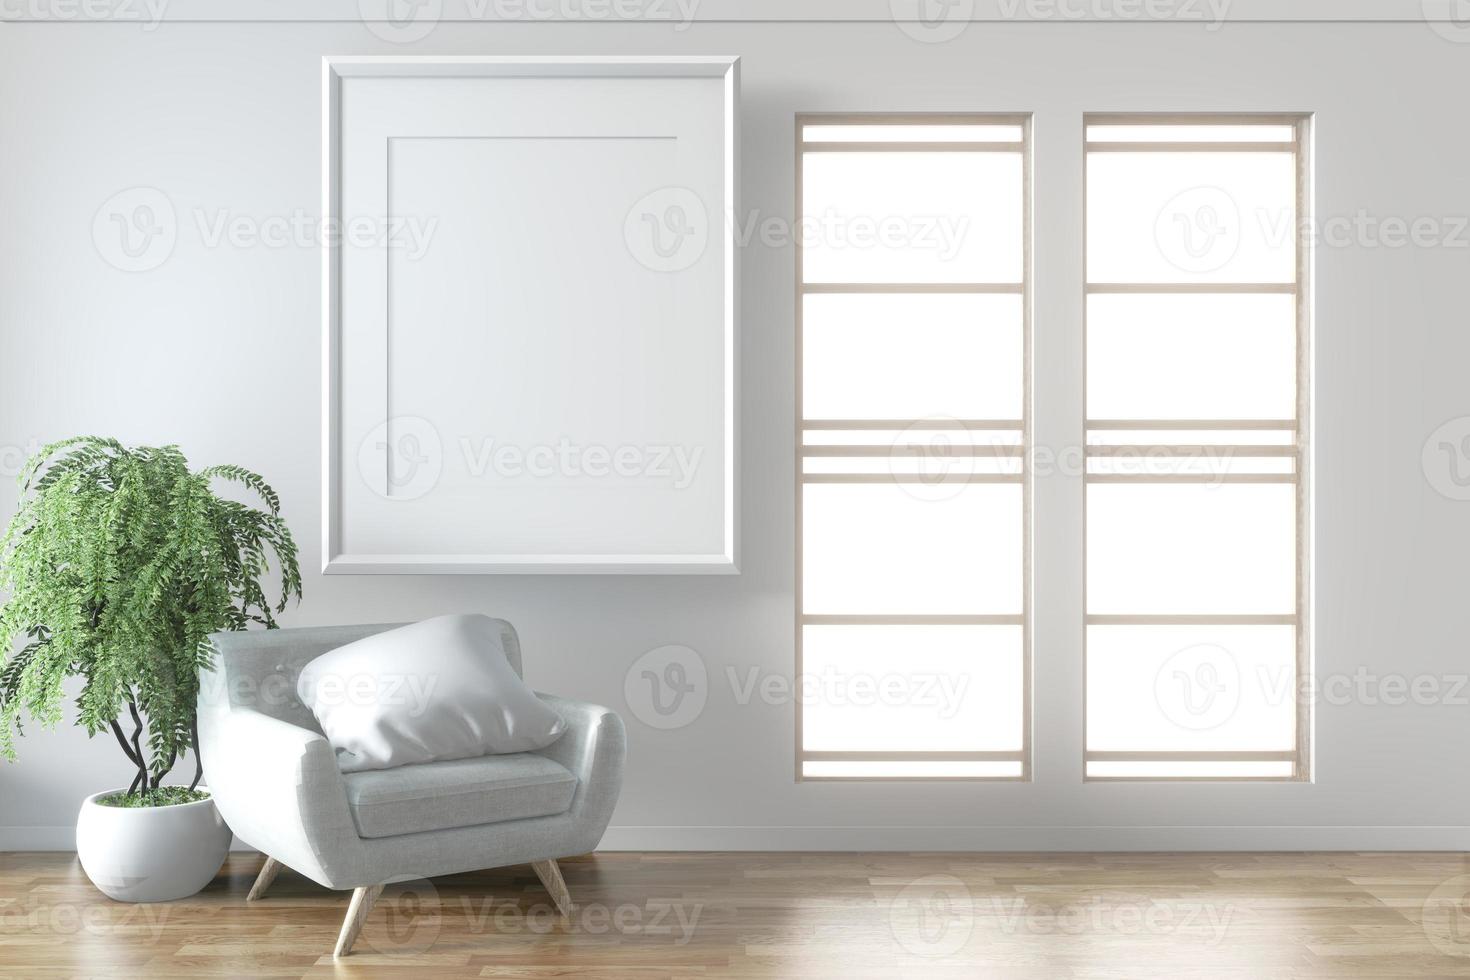 interni eleganti della stanza mock up con poltrona e telaio grigio elegante e confortevole sul pavimento della parete bianca in legno.3d rendering foto